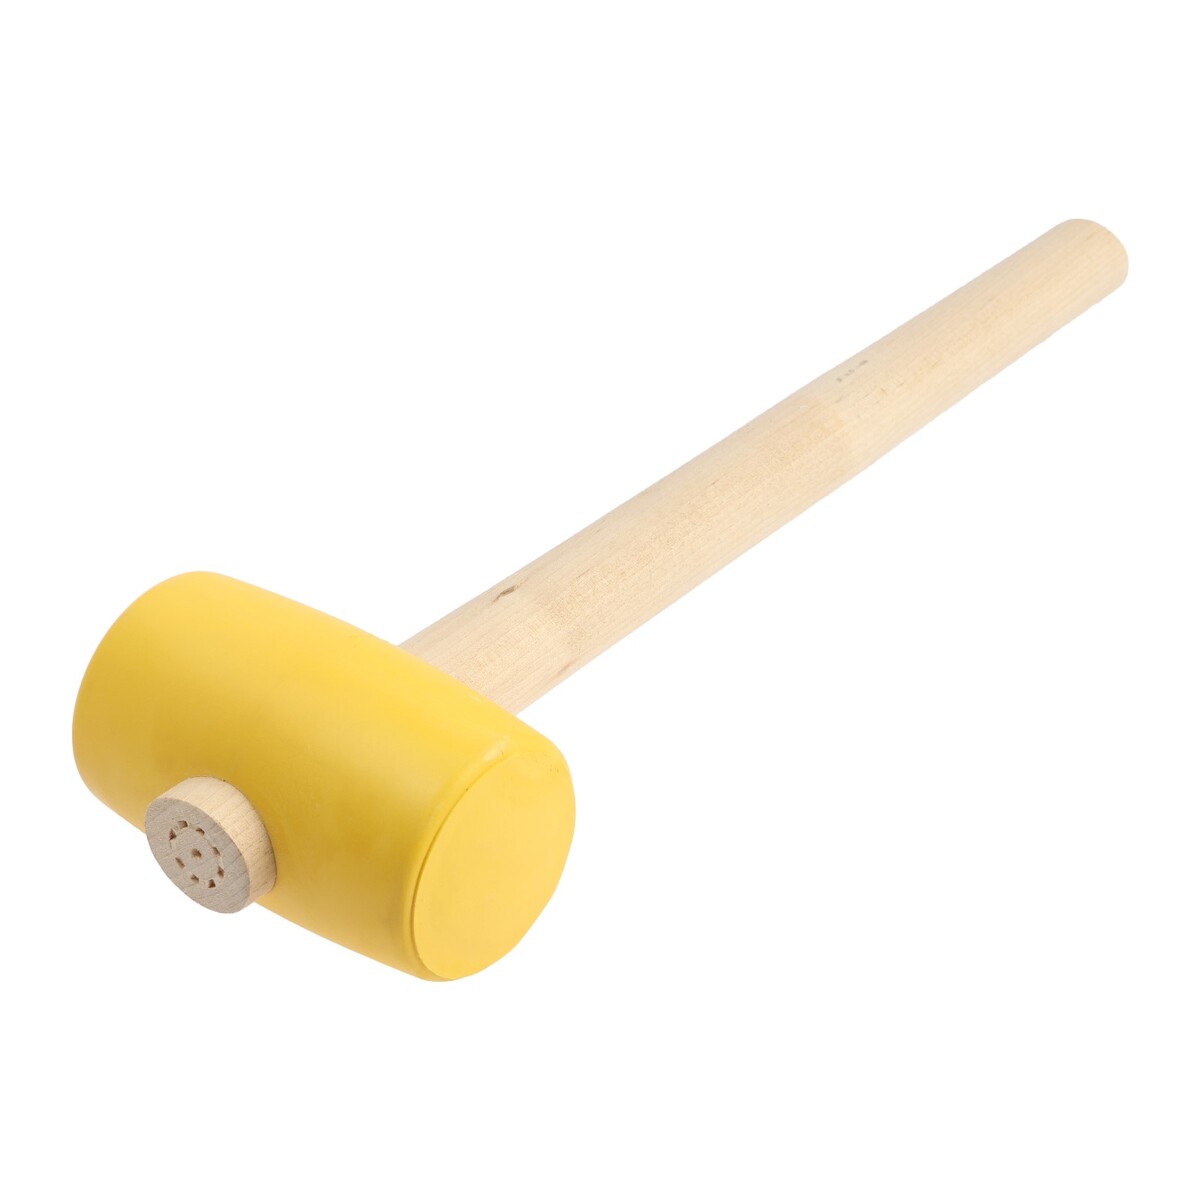 Киянка лом, деревянная рукоятка, желтая резина, 55 мм, 400 г киянка 680 г резина рукоятка фиберглассовая bartex 162875